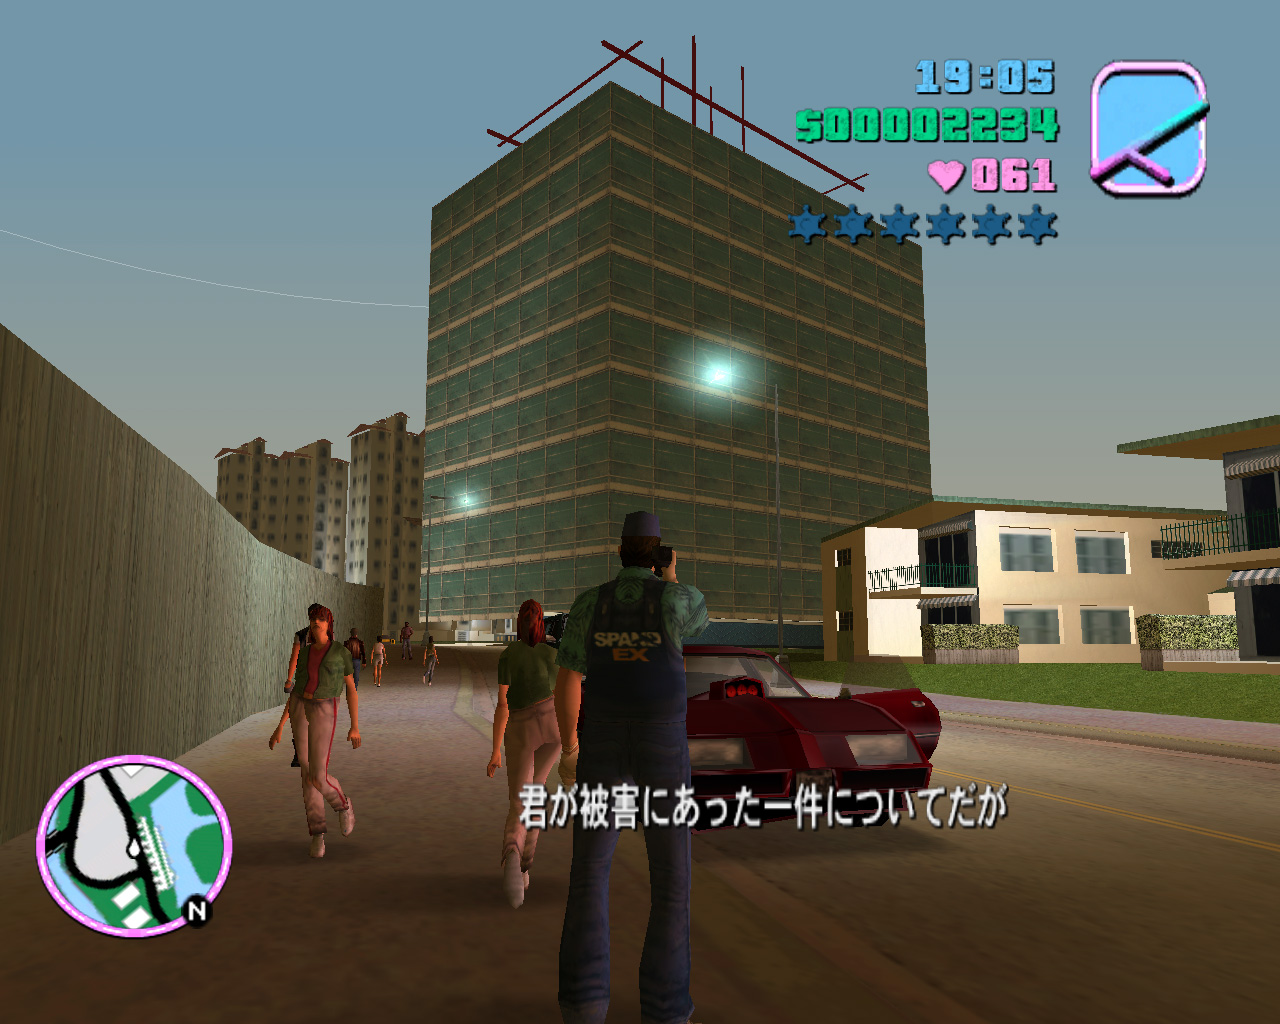 Grand Theft Auto Vice City Text By 松本 隆一 12th Jun 03 このレビュー記事は英語版をもとに作成していますが 最後に日本語版についての情報があります あの世界的に大ヒットしたバイオレンスゲームの続編がpcに登場 Gtaシリーズといえば銃撃戦